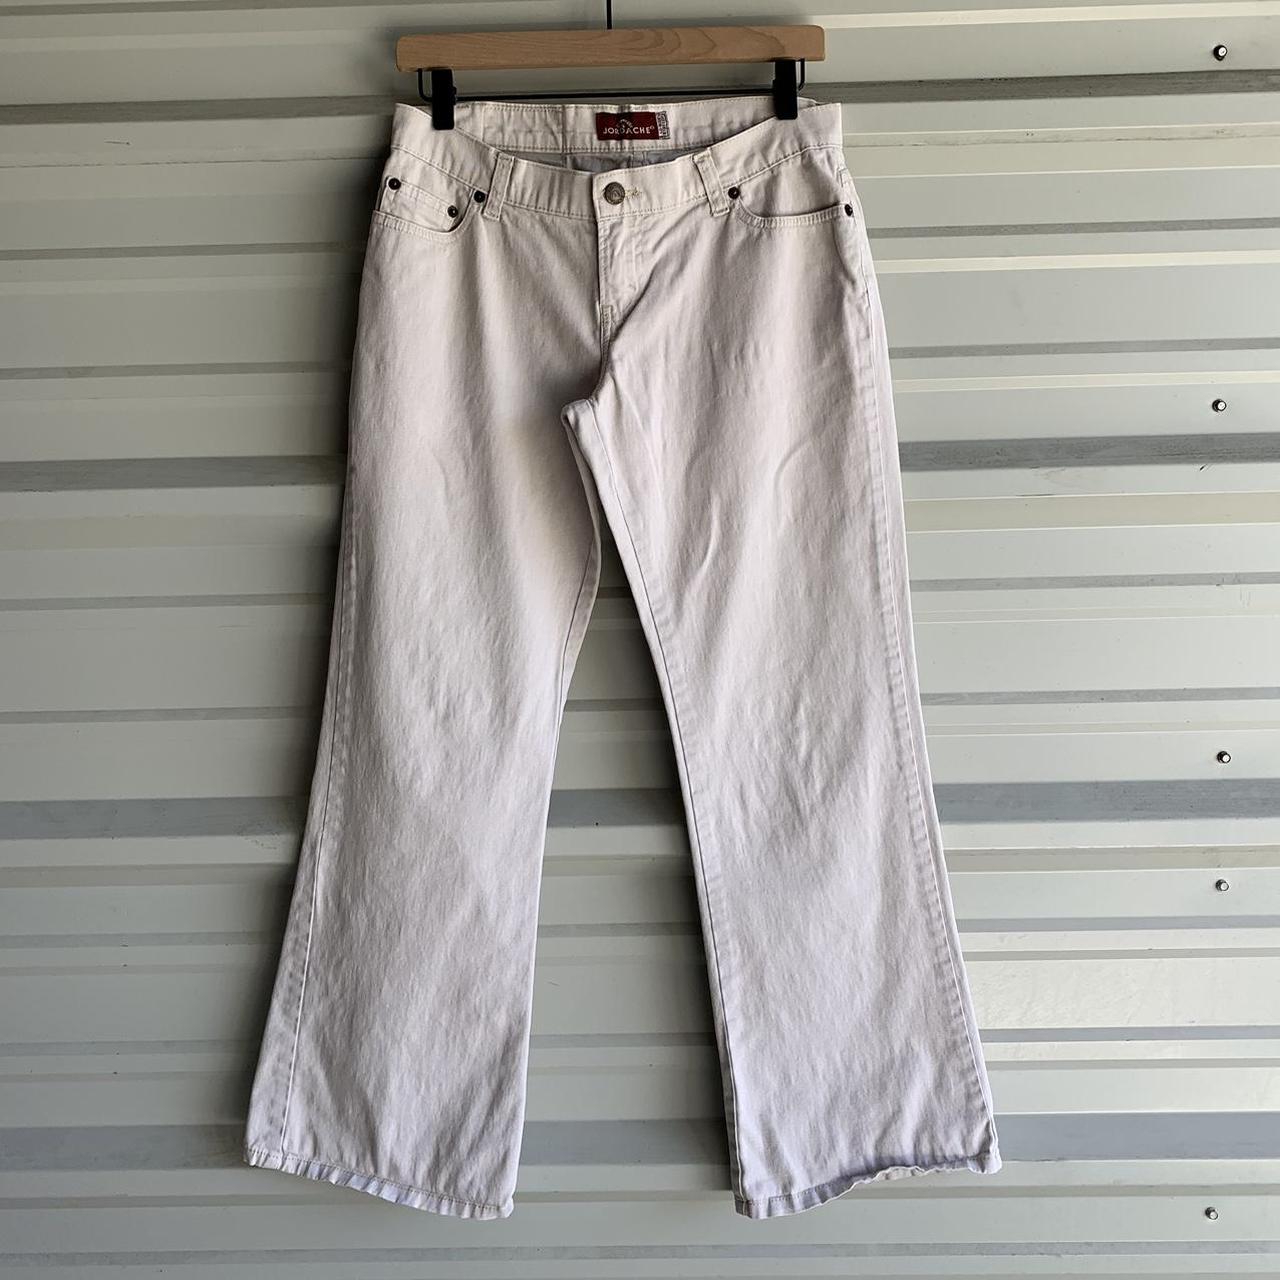 Escada sport white linen pants No flaws but worn - Depop